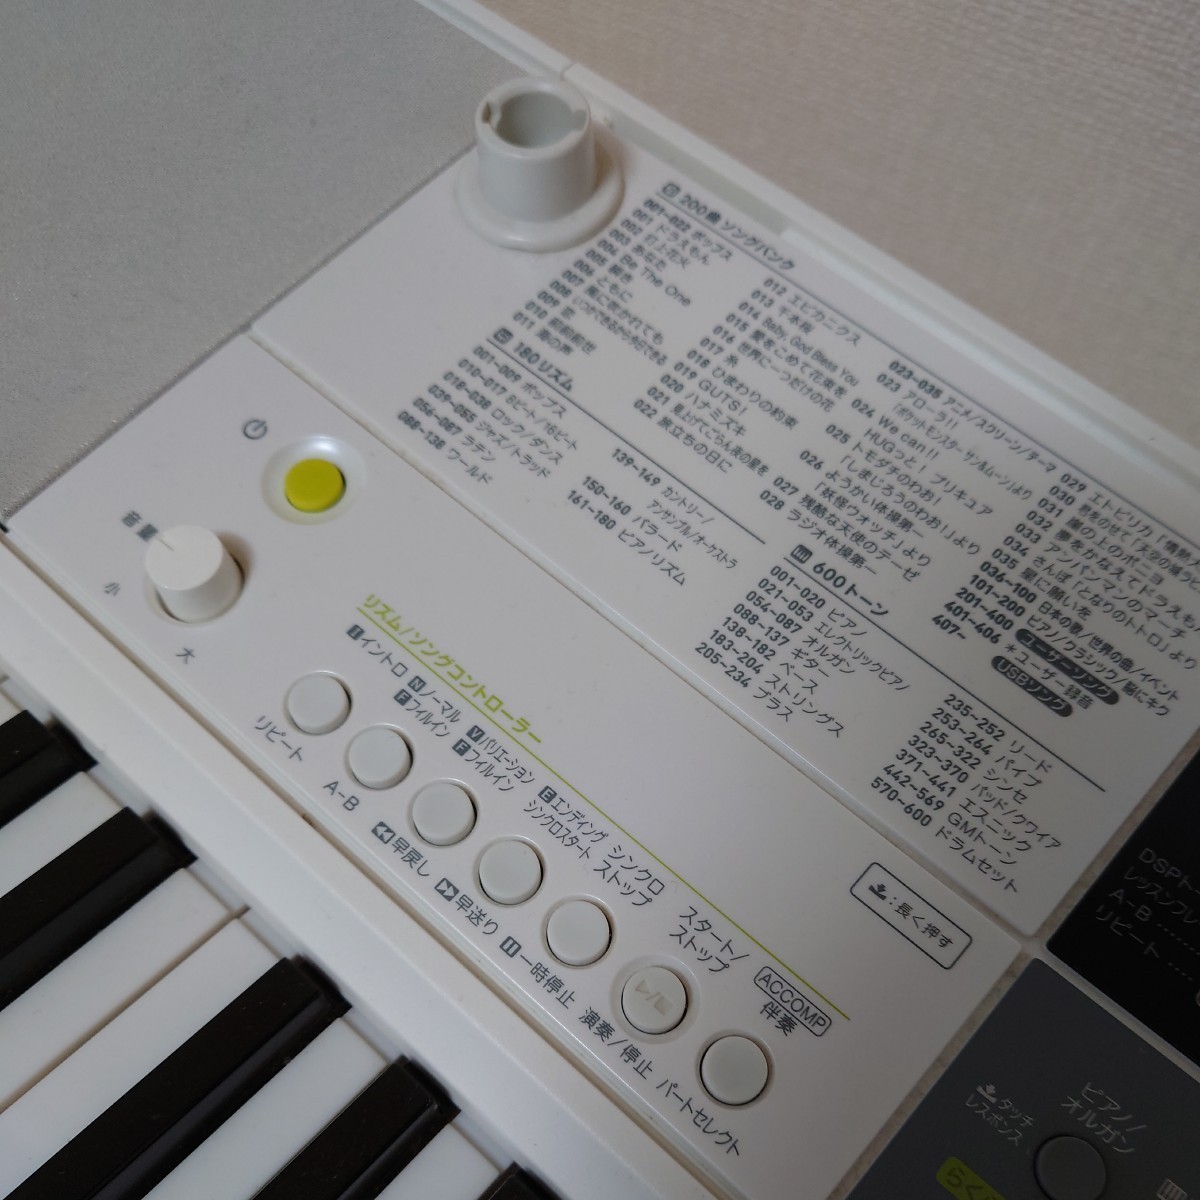 CASIO 光ナビゲーションキーボードLK -511 動作確認済み カシオ純正CS-4B キーボードスタンド付き電子ピアノ 音楽 楽器 打ち込み ドラムの画像8